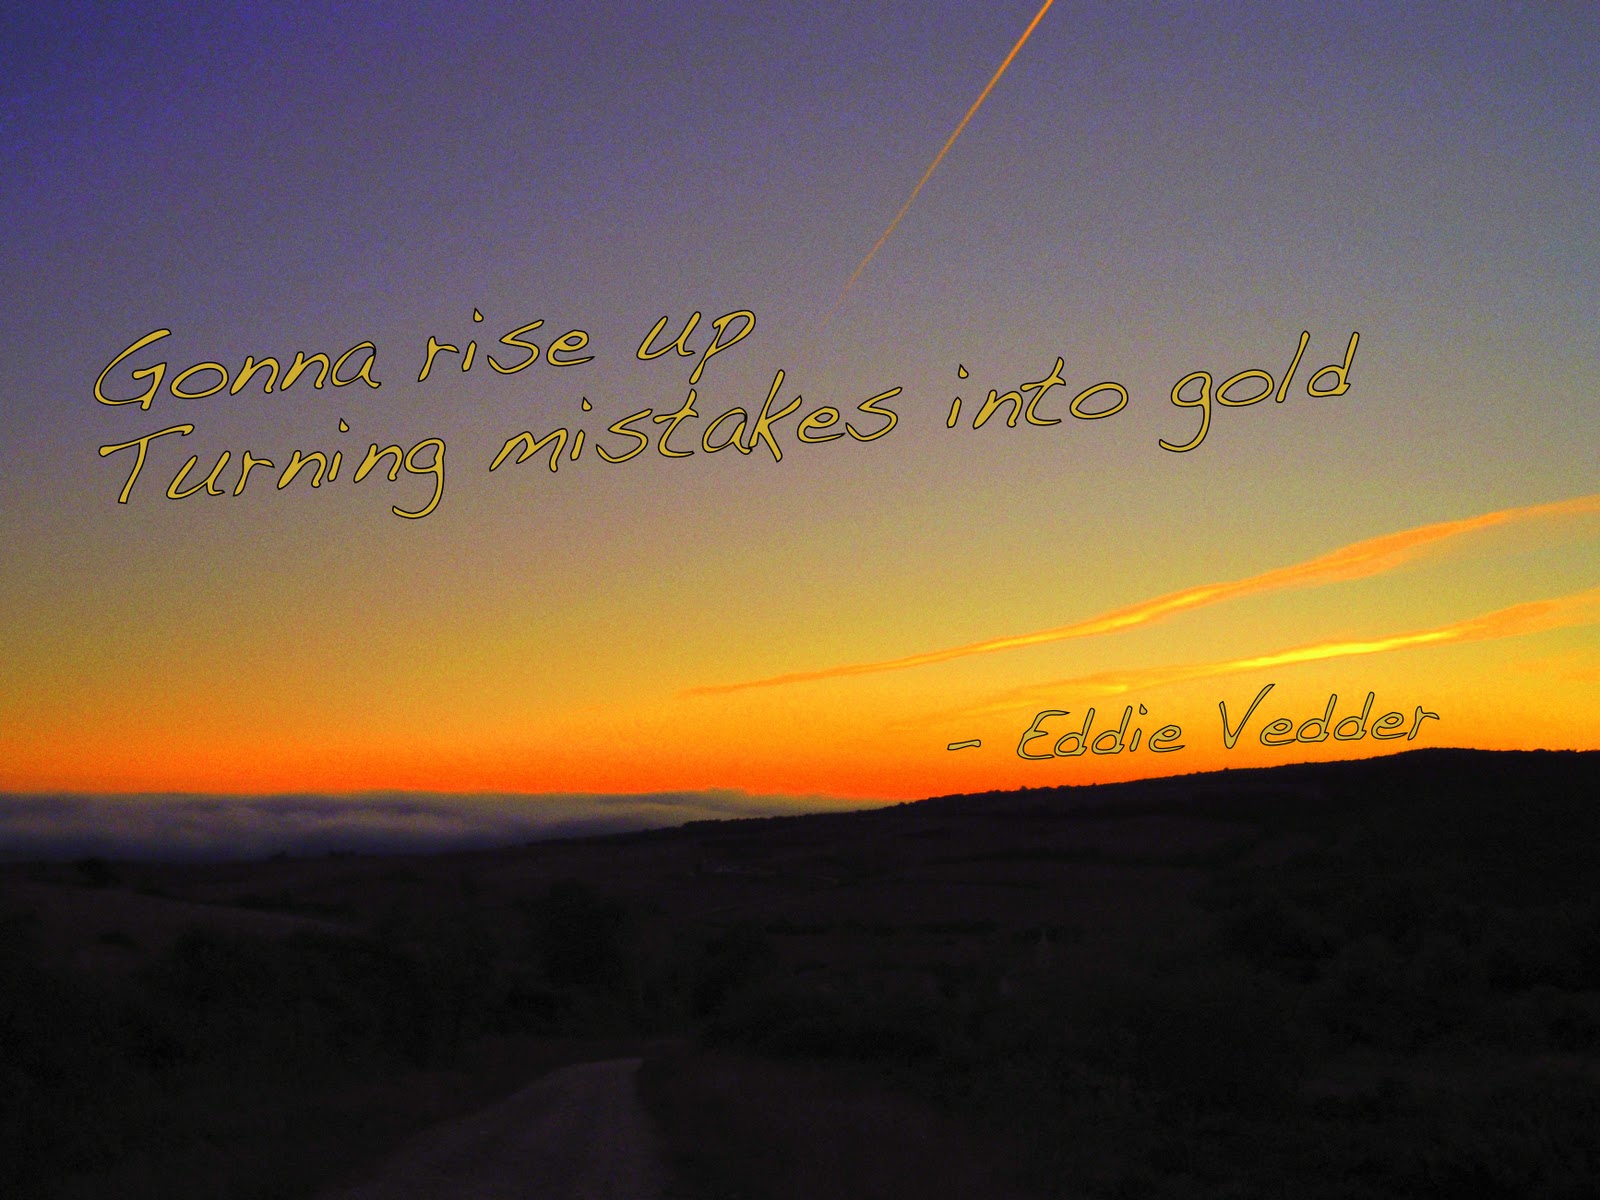 Eddie Vedder's quote #2